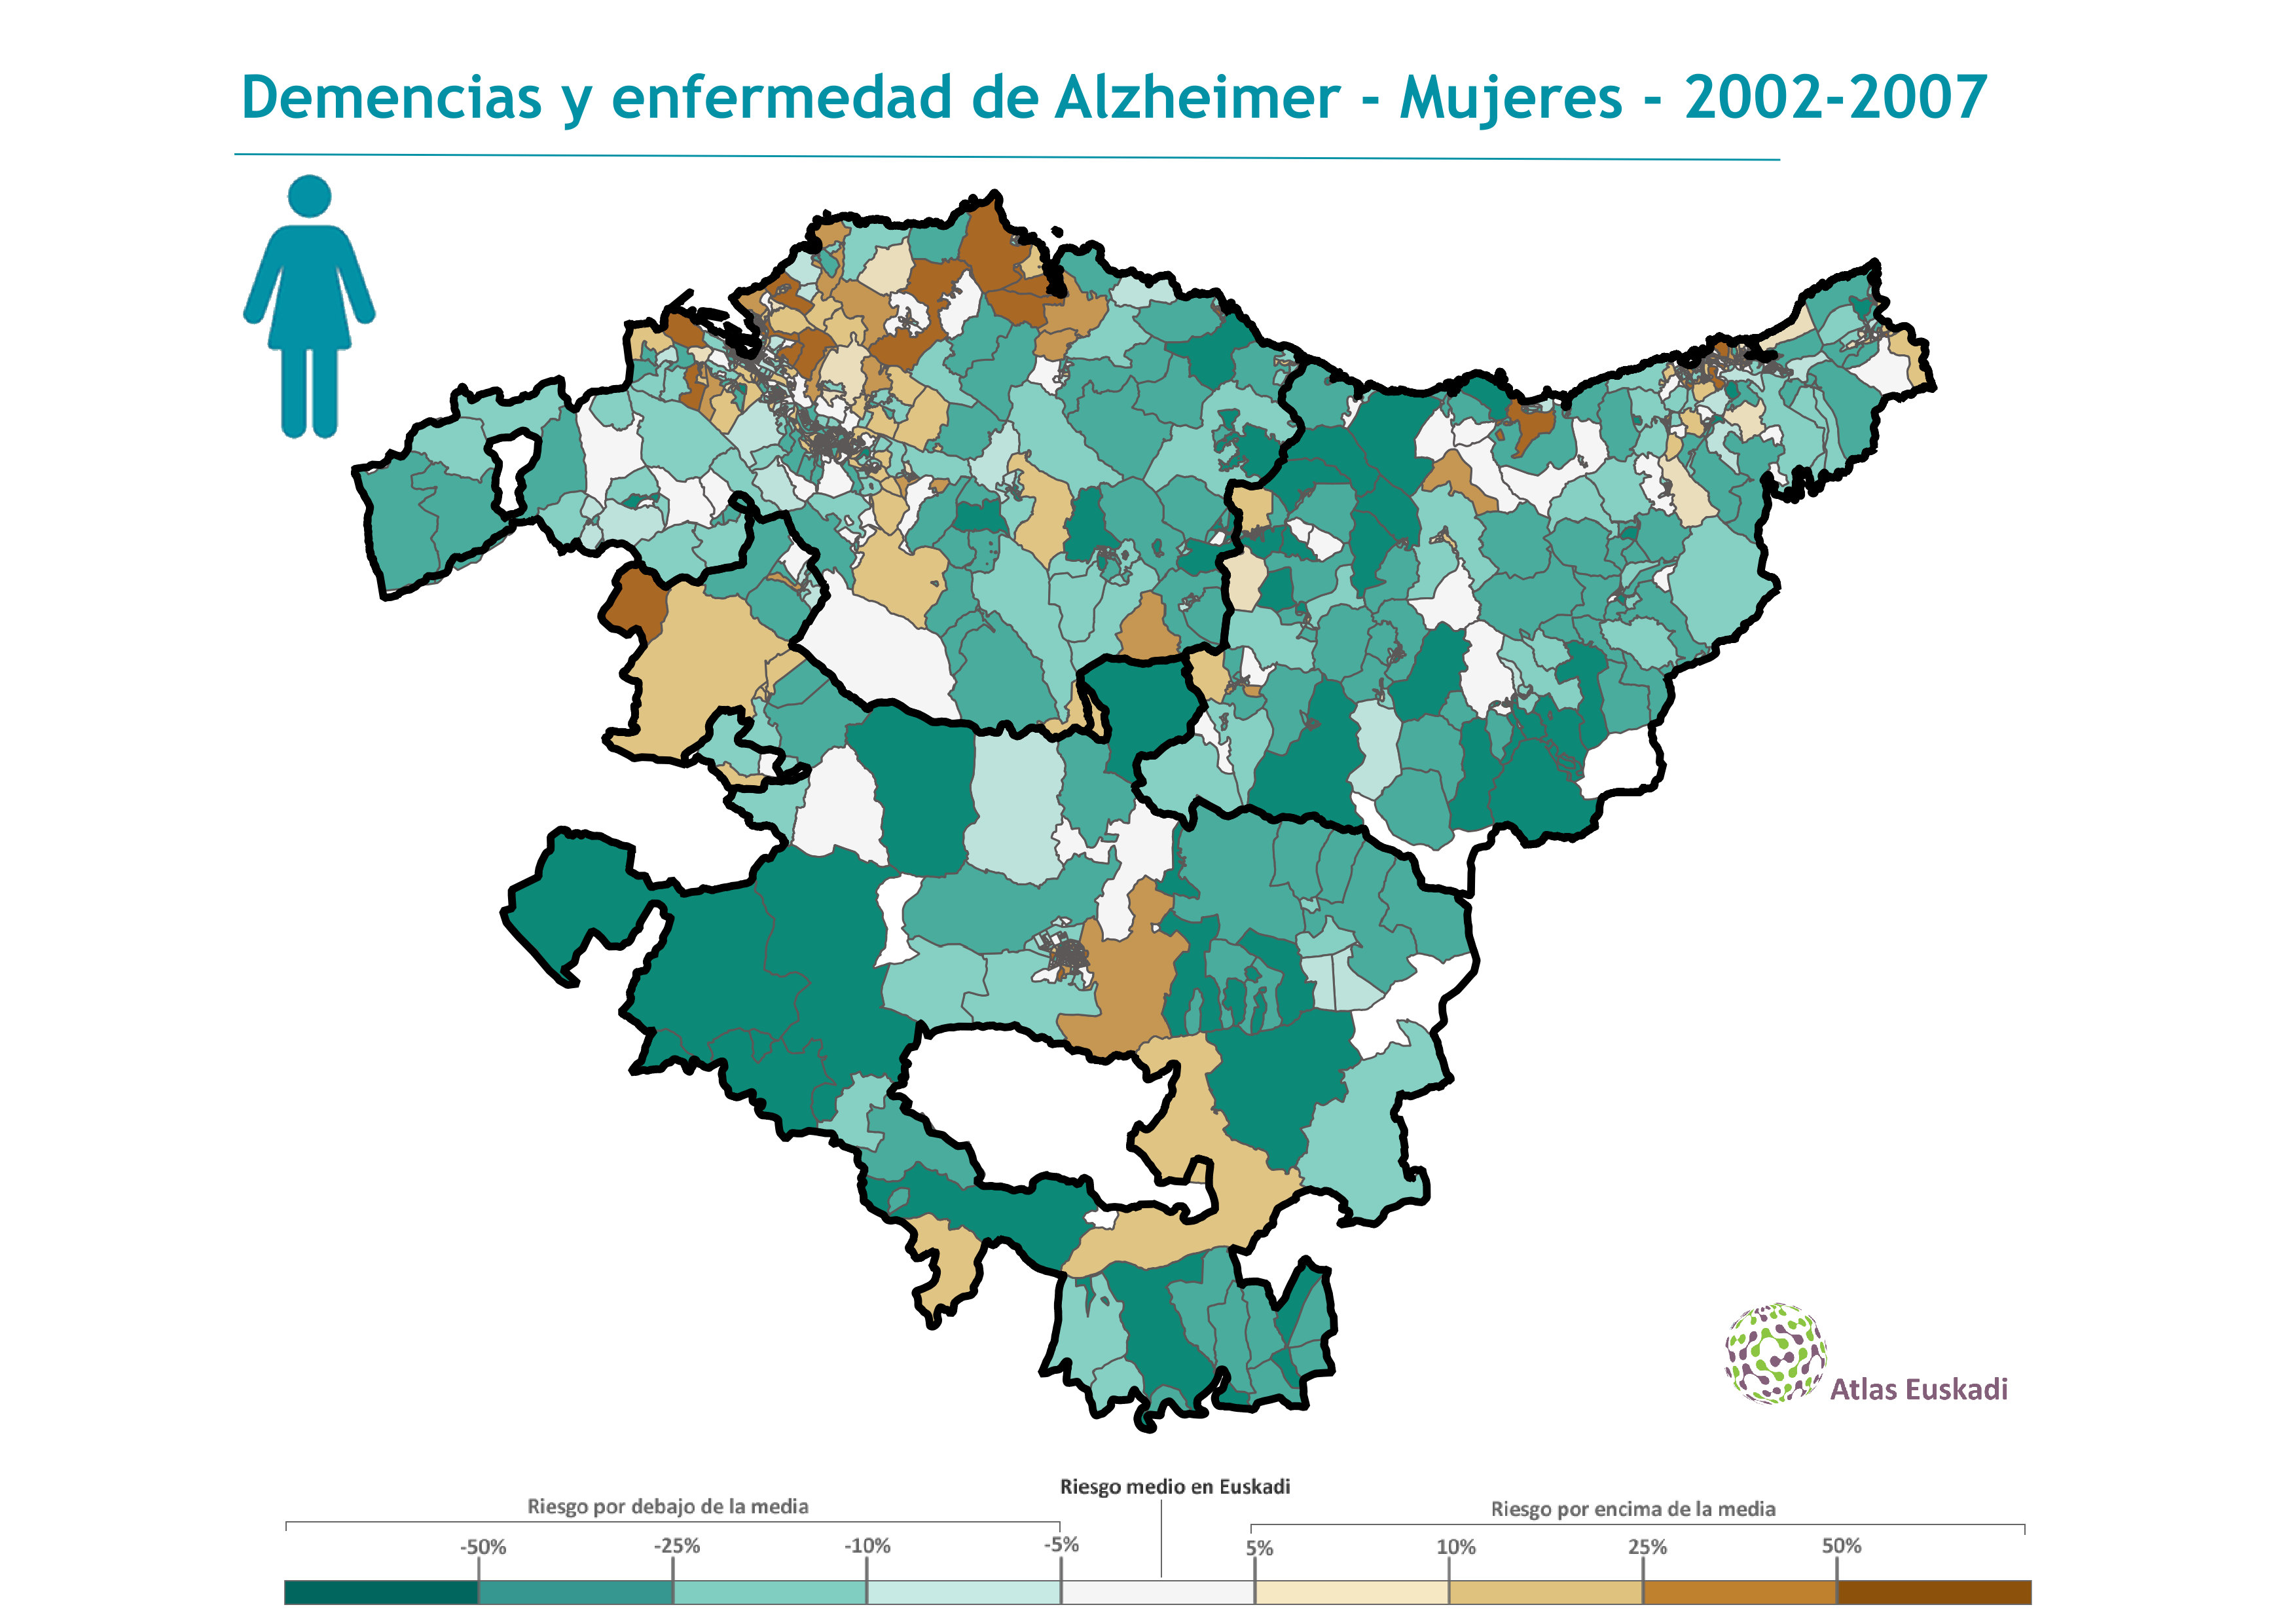 Demencias y enfermedad de Alzheimer mujeres  2002-2007 Euskadi